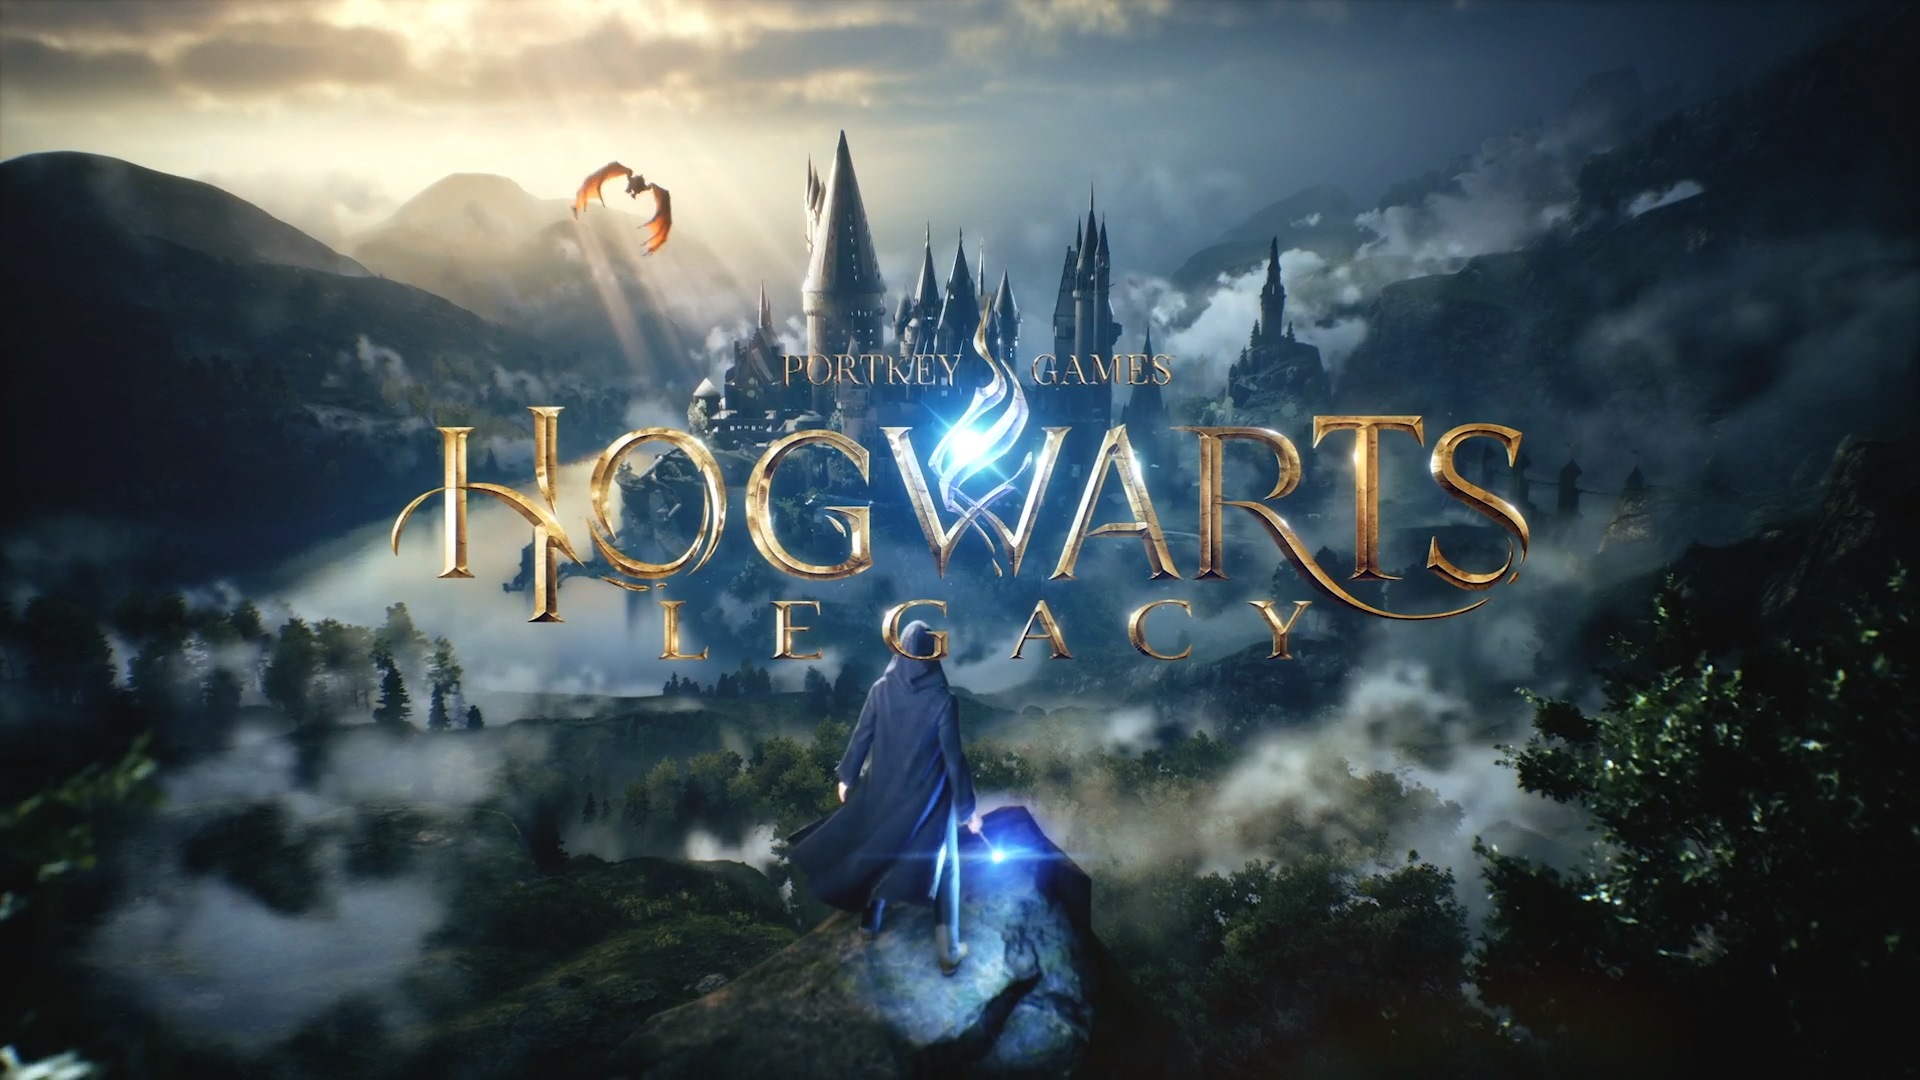 مبيعات Hogwarts Legacy أعلى من التوقعات بنسبة 256%!